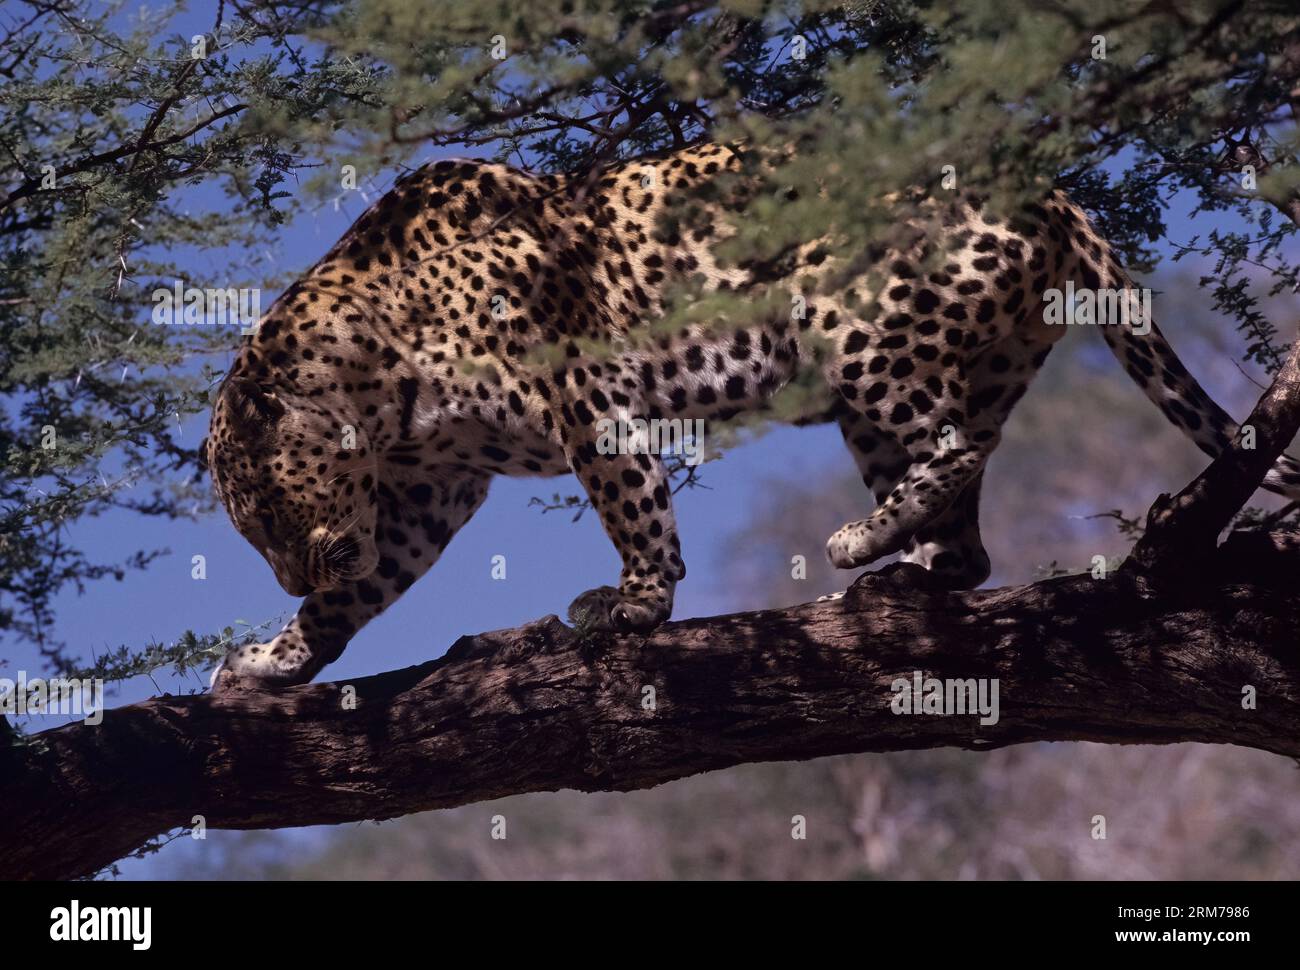 Le léopard d'Afrique (Panthera pardus pardus) est la sous-espèce nominale du léopard, originaire de nombreux pays d'Afrique. Banque D'Images